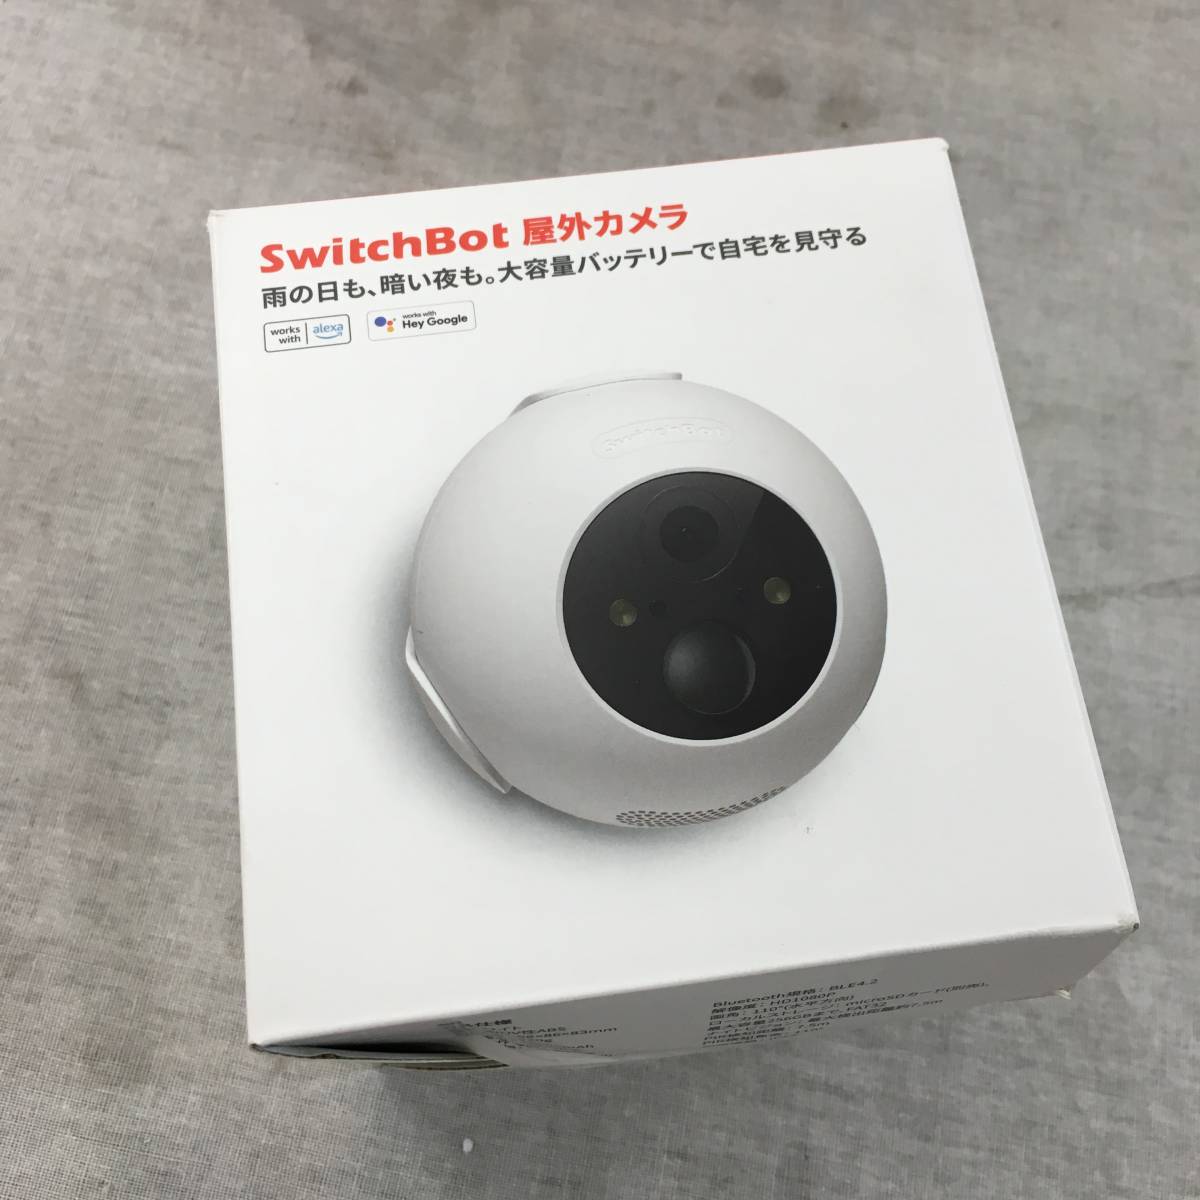 SwitchBot камера системы безопасности переключатель boto наружный камера Alexa - мониторинг камера W2802000